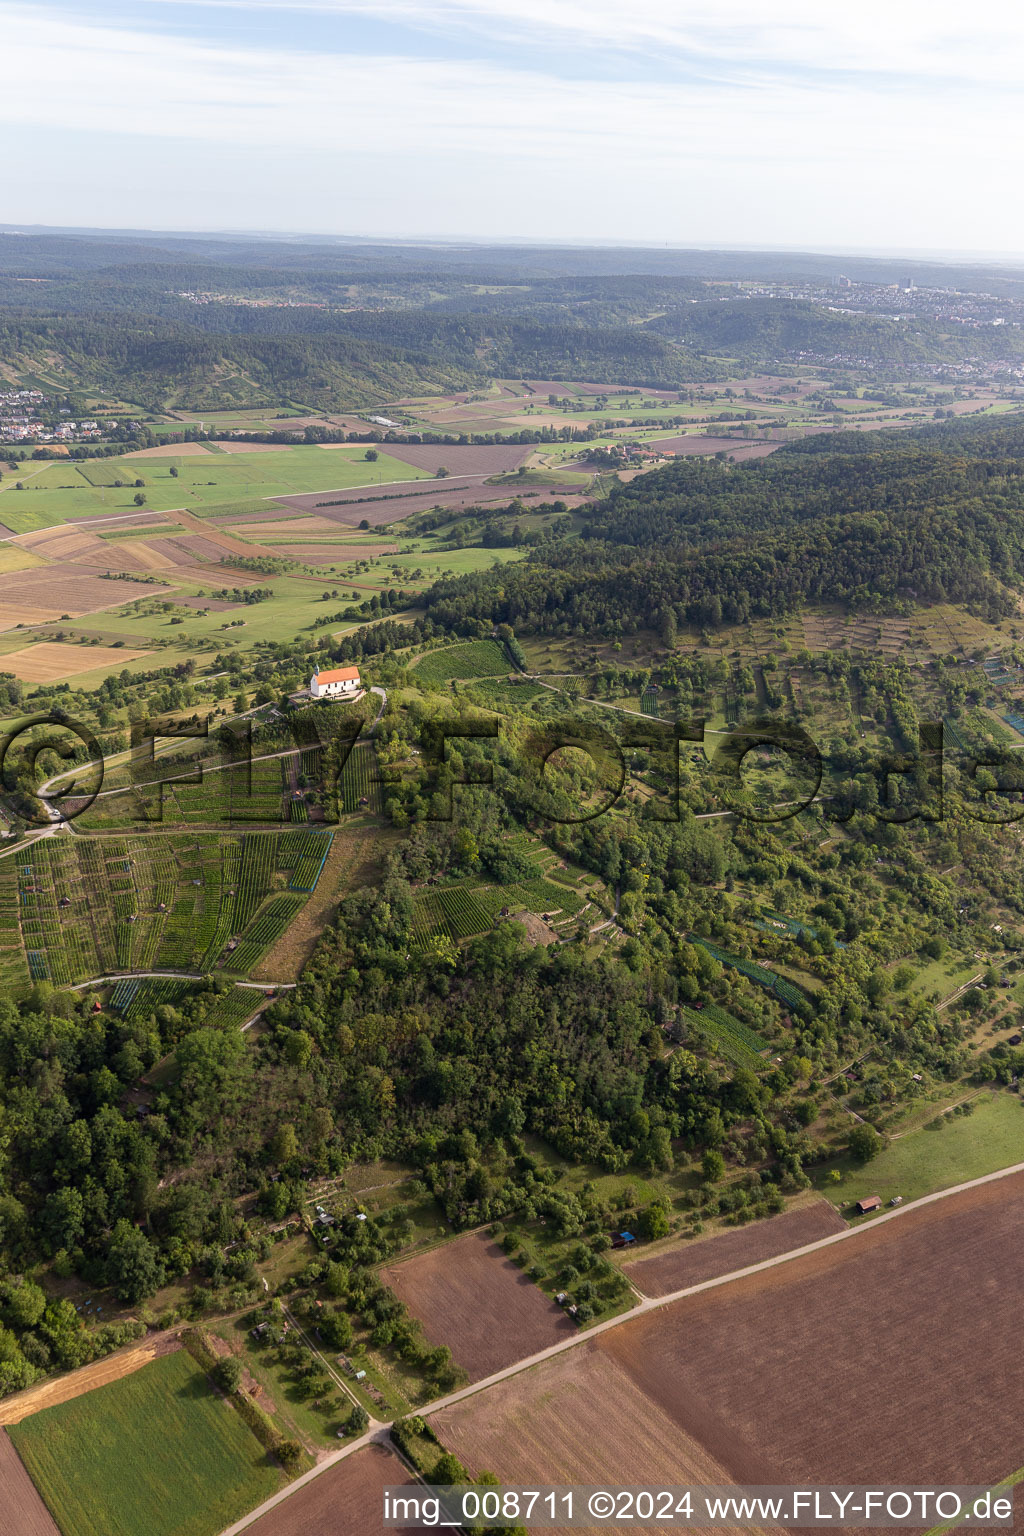 Vue aérienne de Bâtiment d'église en bordure de champs agricoles et de zones agricoles à Wurmlingen à Rottenburg am Neckar dans le département Bade-Wurtemberg, Allemagne